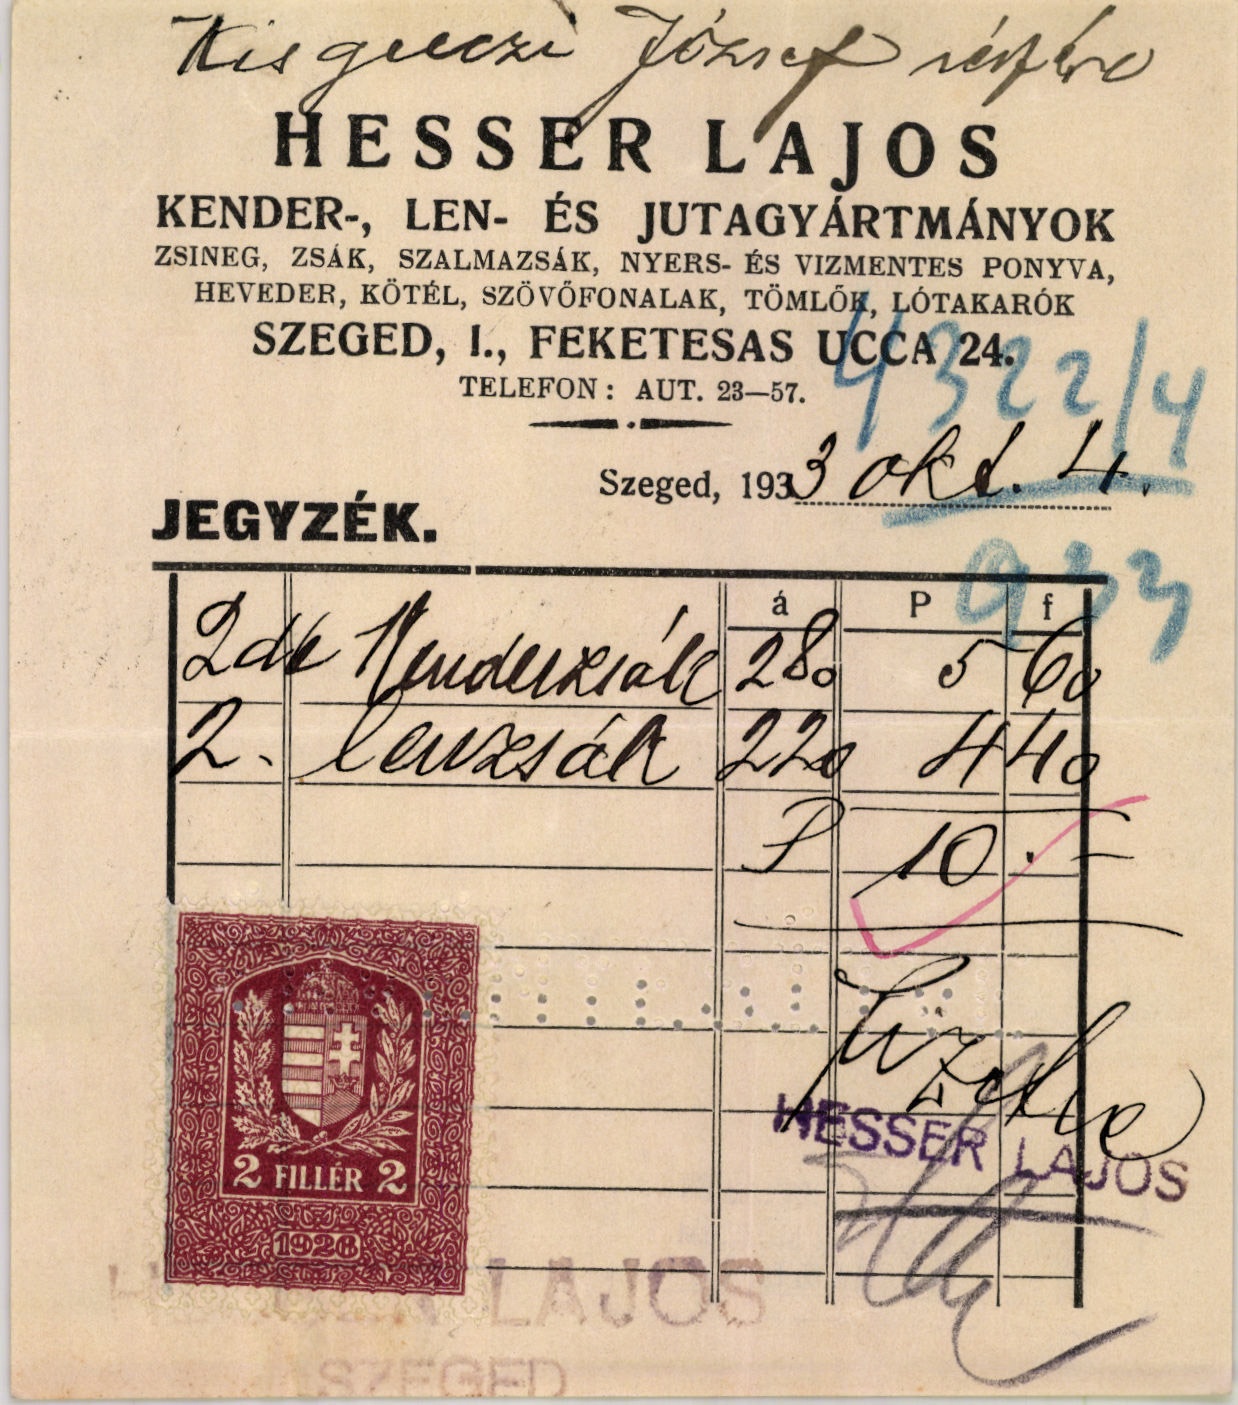 Hesser Lajos kender-, len- és jutagyártmányok (Magyar Kereskedelmi és Vendéglátóipari Múzeum CC BY-NC-SA)